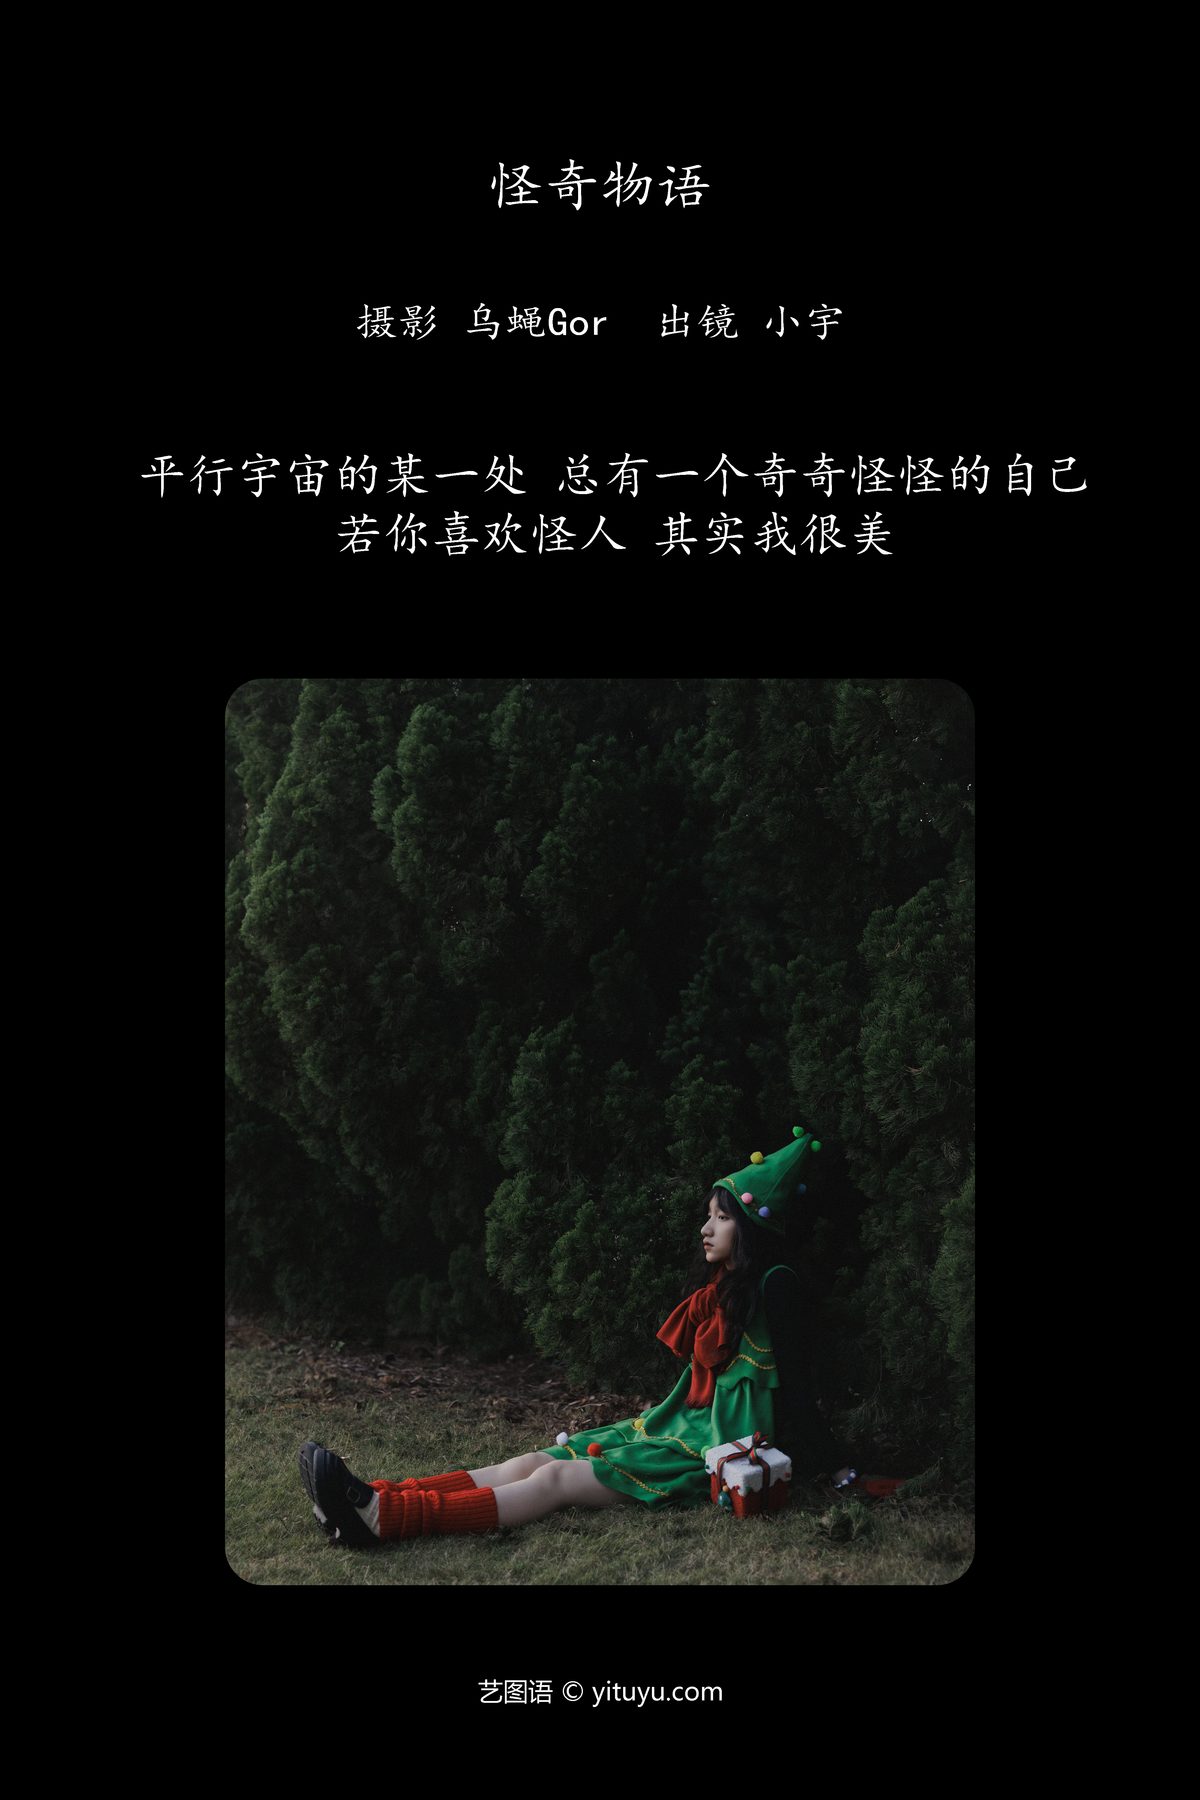 YiTuYu艺图语 Vol 6201 Xiao Yu 0001 5599109152.jpg